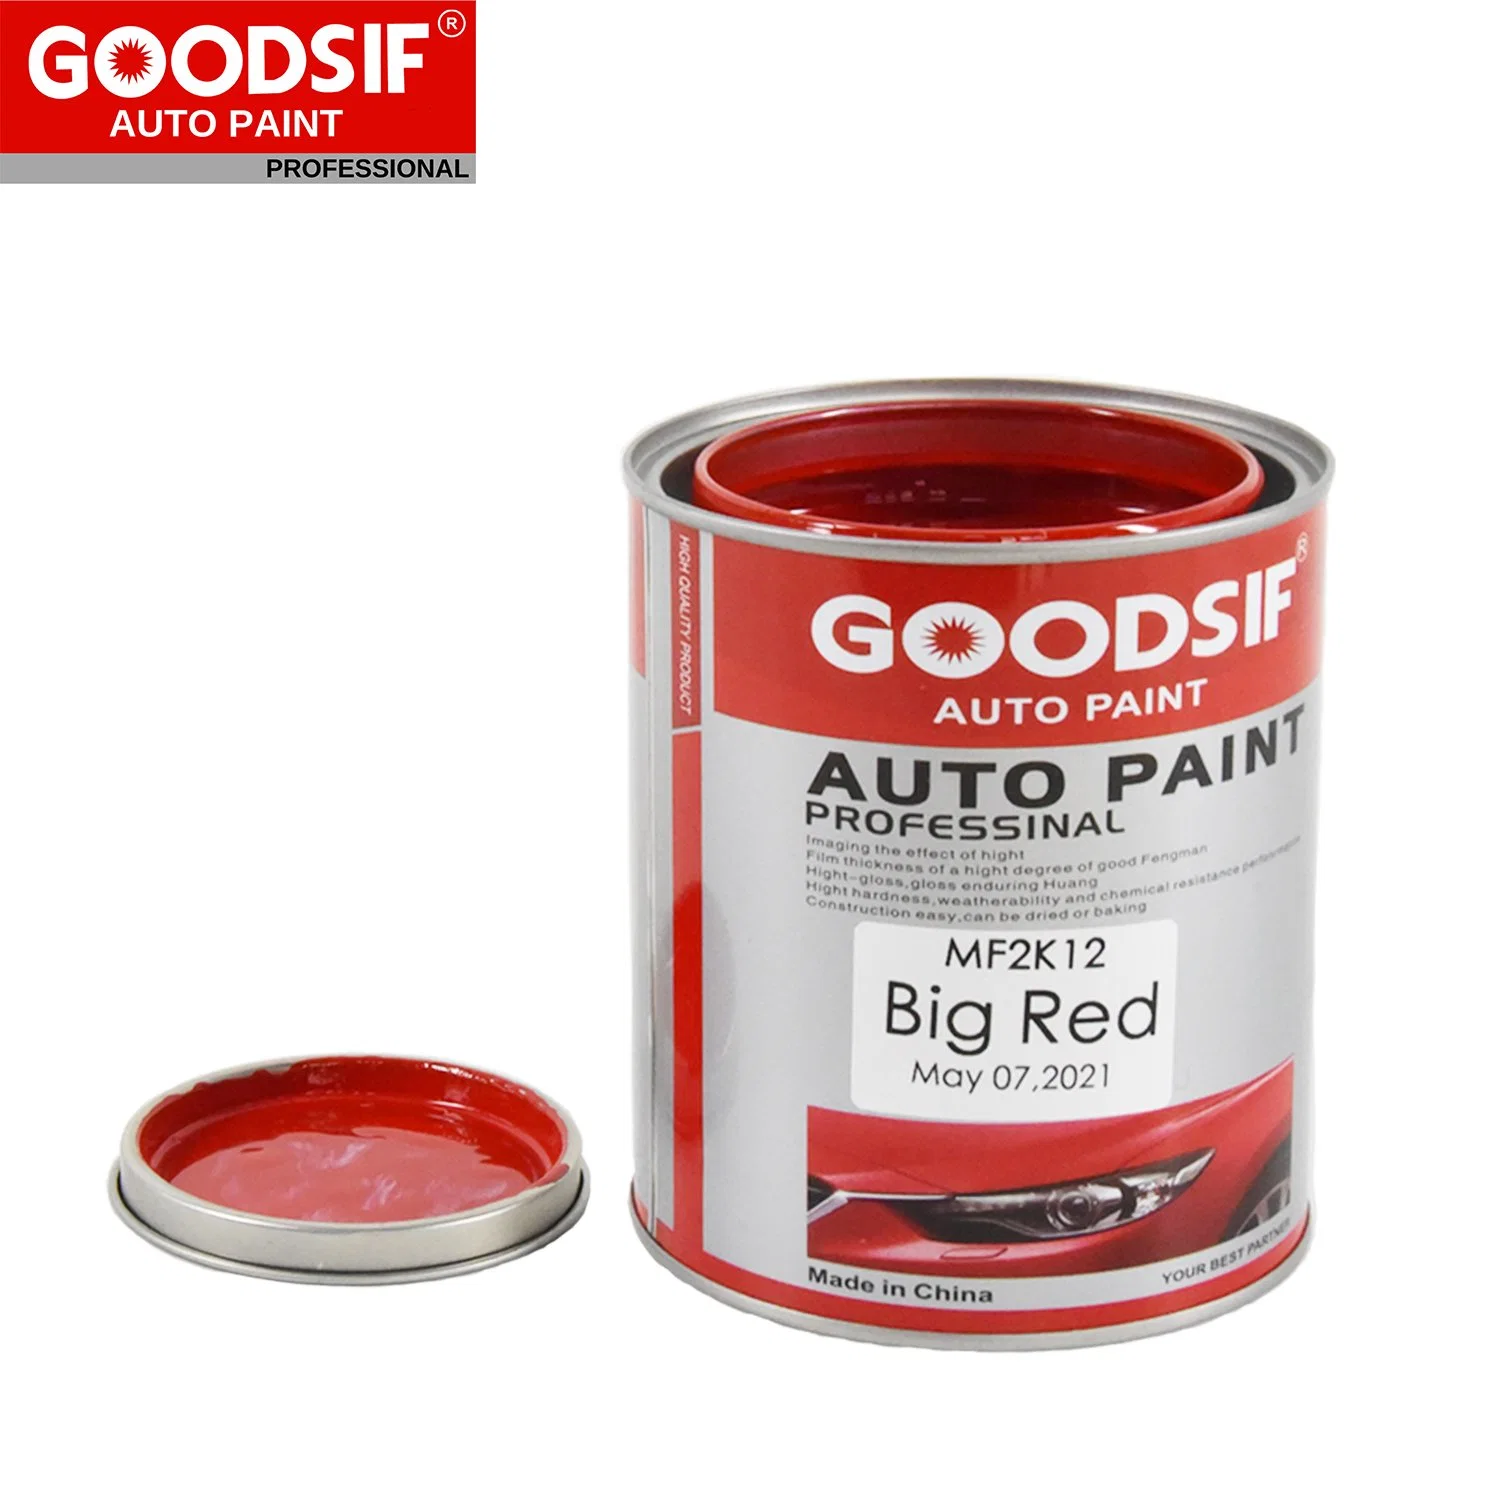 Venta caliente Productos de Pintura para automóviles Goodsif 1K 2K mezcla de toner Base fábrica Precio Auto Body Shop Refine Automotive Paint